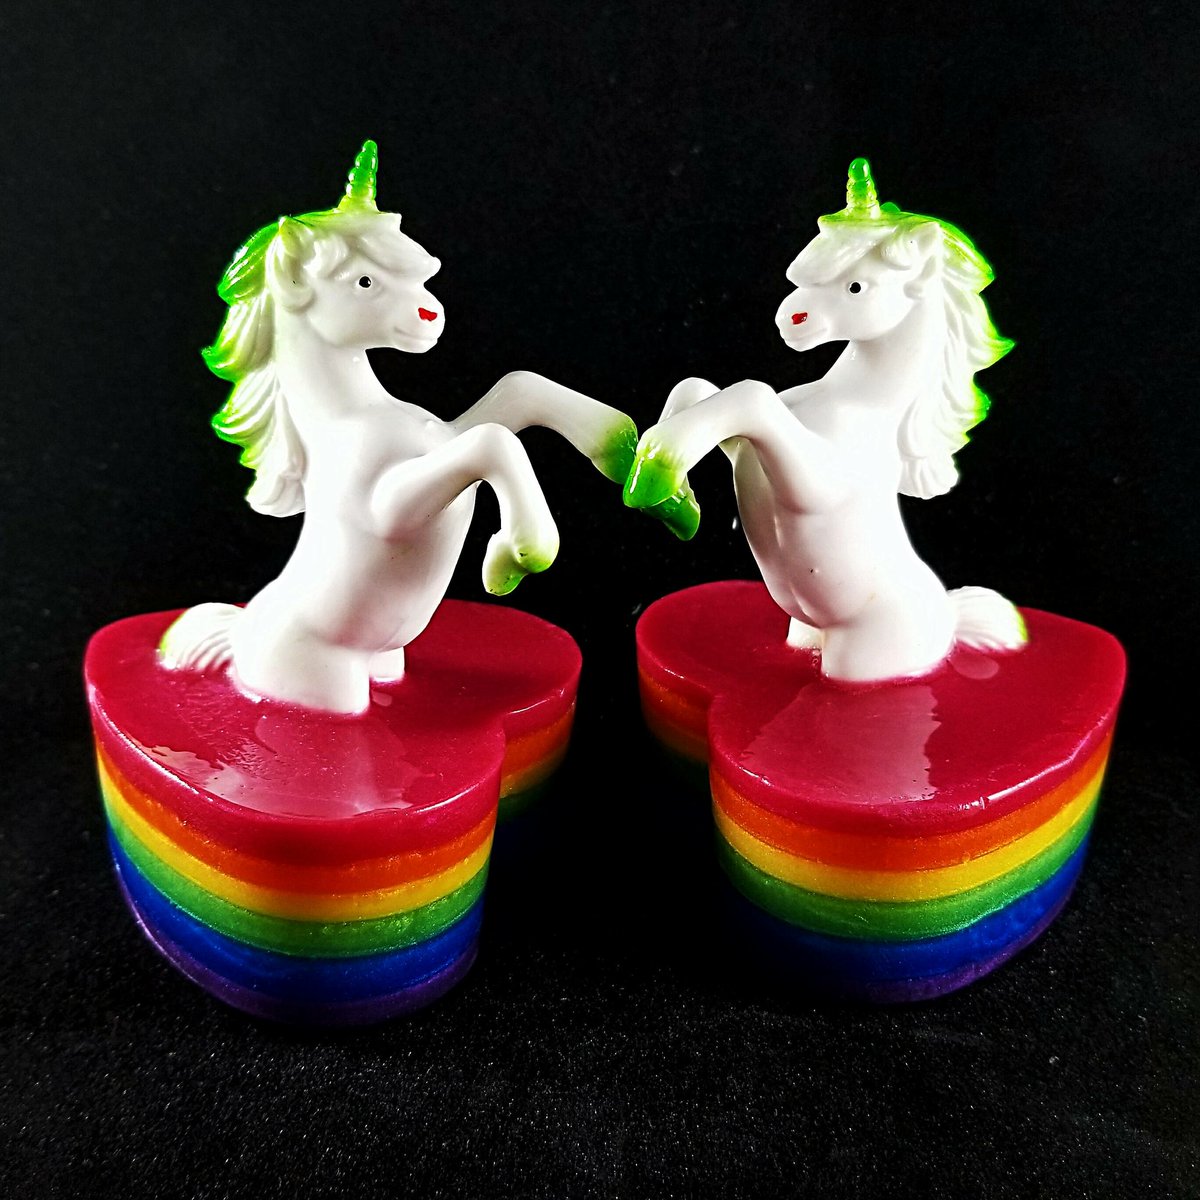 Excited to share the latest addition to my #etsy shop: Rainbow Legend Unicorn Soap! #bathandbeauty #soap #rainbow #white #unicorn #toy #stockingstuffer #stocking #stuffer #gift #christmas #Holiday #geek #moonshinesuds #Nashville #TN #soapartisan  etsy.me/2ibDes8